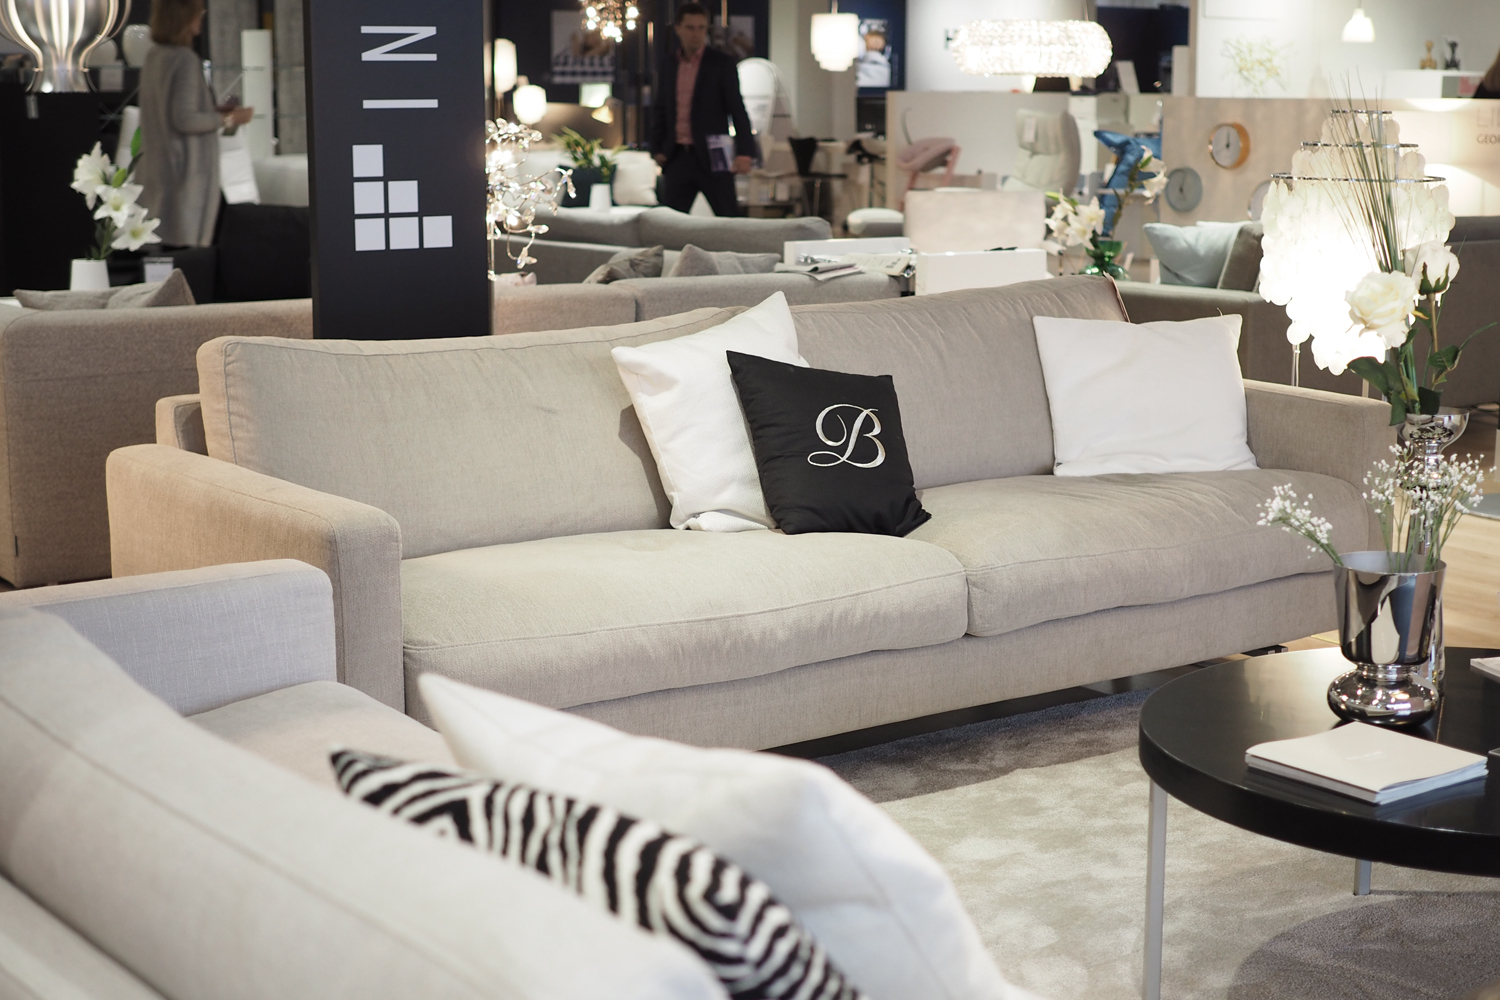 C and the city - Sisustussuunnittelijan 5 vinkkiä sohvan valintaan - lue lisää blogista: //www.idealista.fi/charandthecity/2016/10/19/5-vinkkia-sohvan-valintaan #sofa #interior #livingroom #vepsäläinen #interface #sohva #sisustussuunnittelija